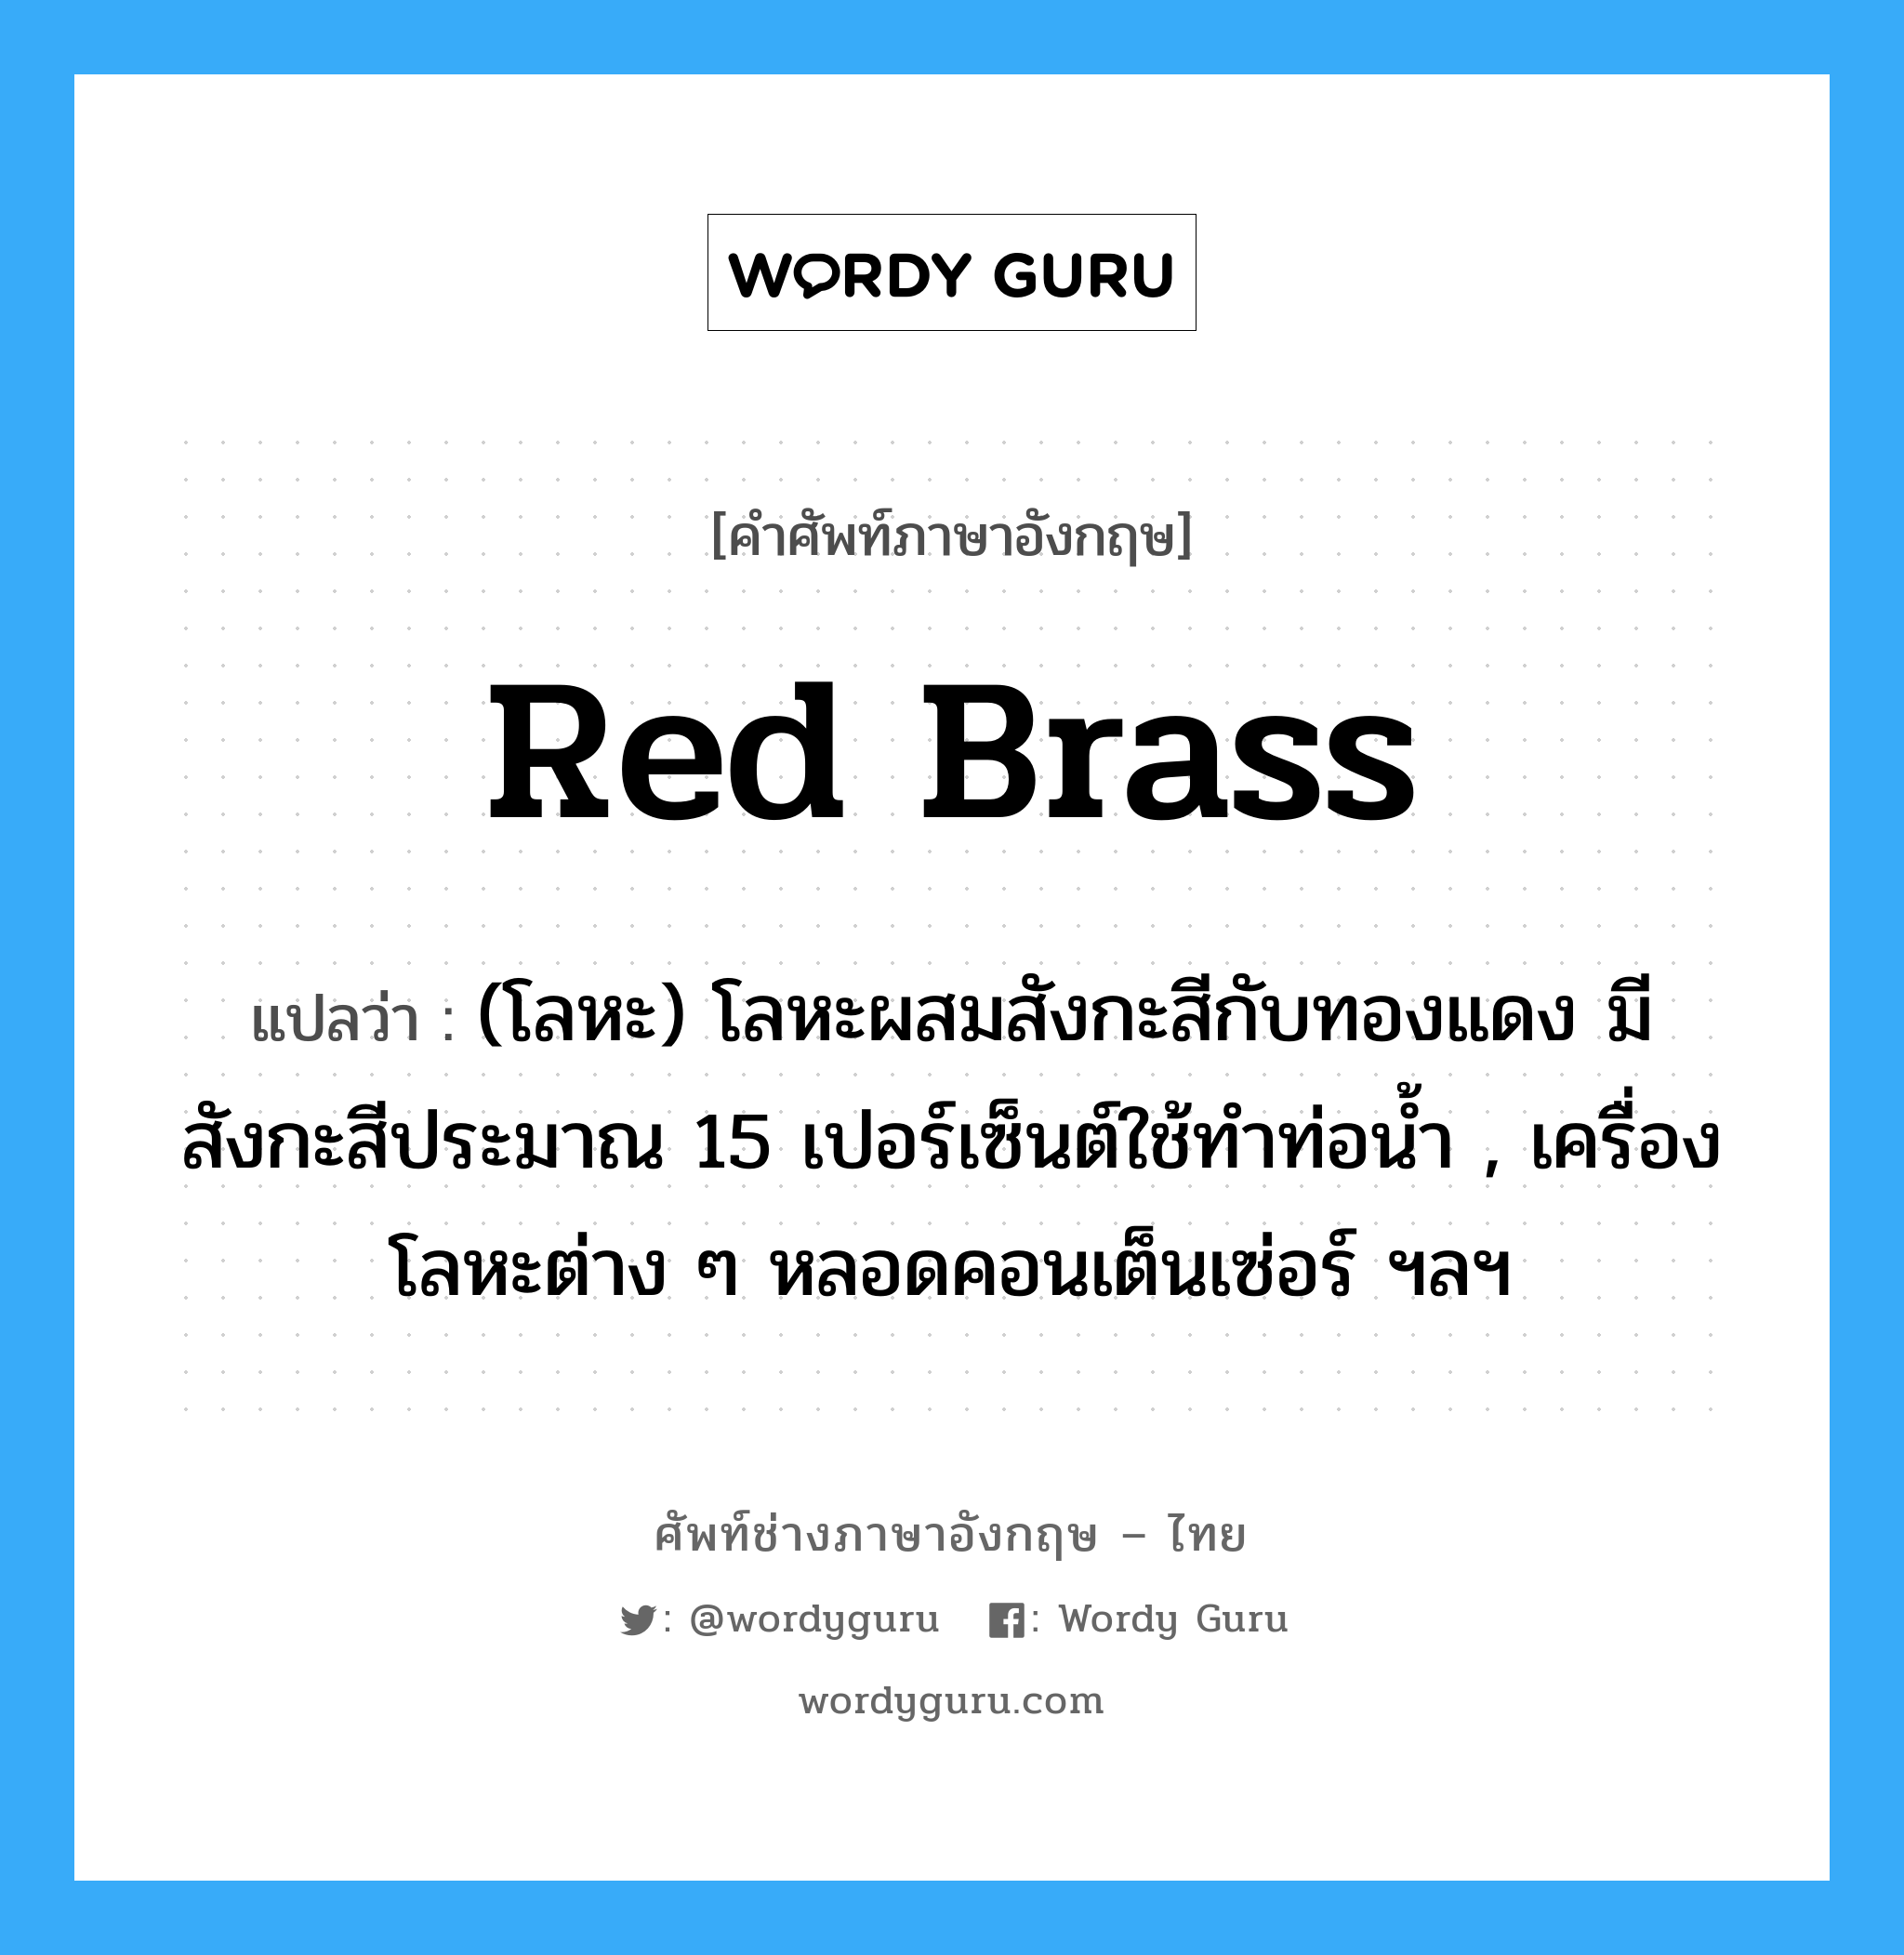 red brass แปลว่า?, คำศัพท์ช่างภาษาอังกฤษ - ไทย red brass คำศัพท์ภาษาอังกฤษ red brass แปลว่า (โลหะ) โลหะผสมสังกะสีกับทองแดง มีสังกะสีประมาณ 15 เปอร์เซ็นต์ใช้ทำท่อน้ำ , เครื่องโลหะต่าง ๆ หลอดคอนเต็นเซ่อร์ ฯลฯ